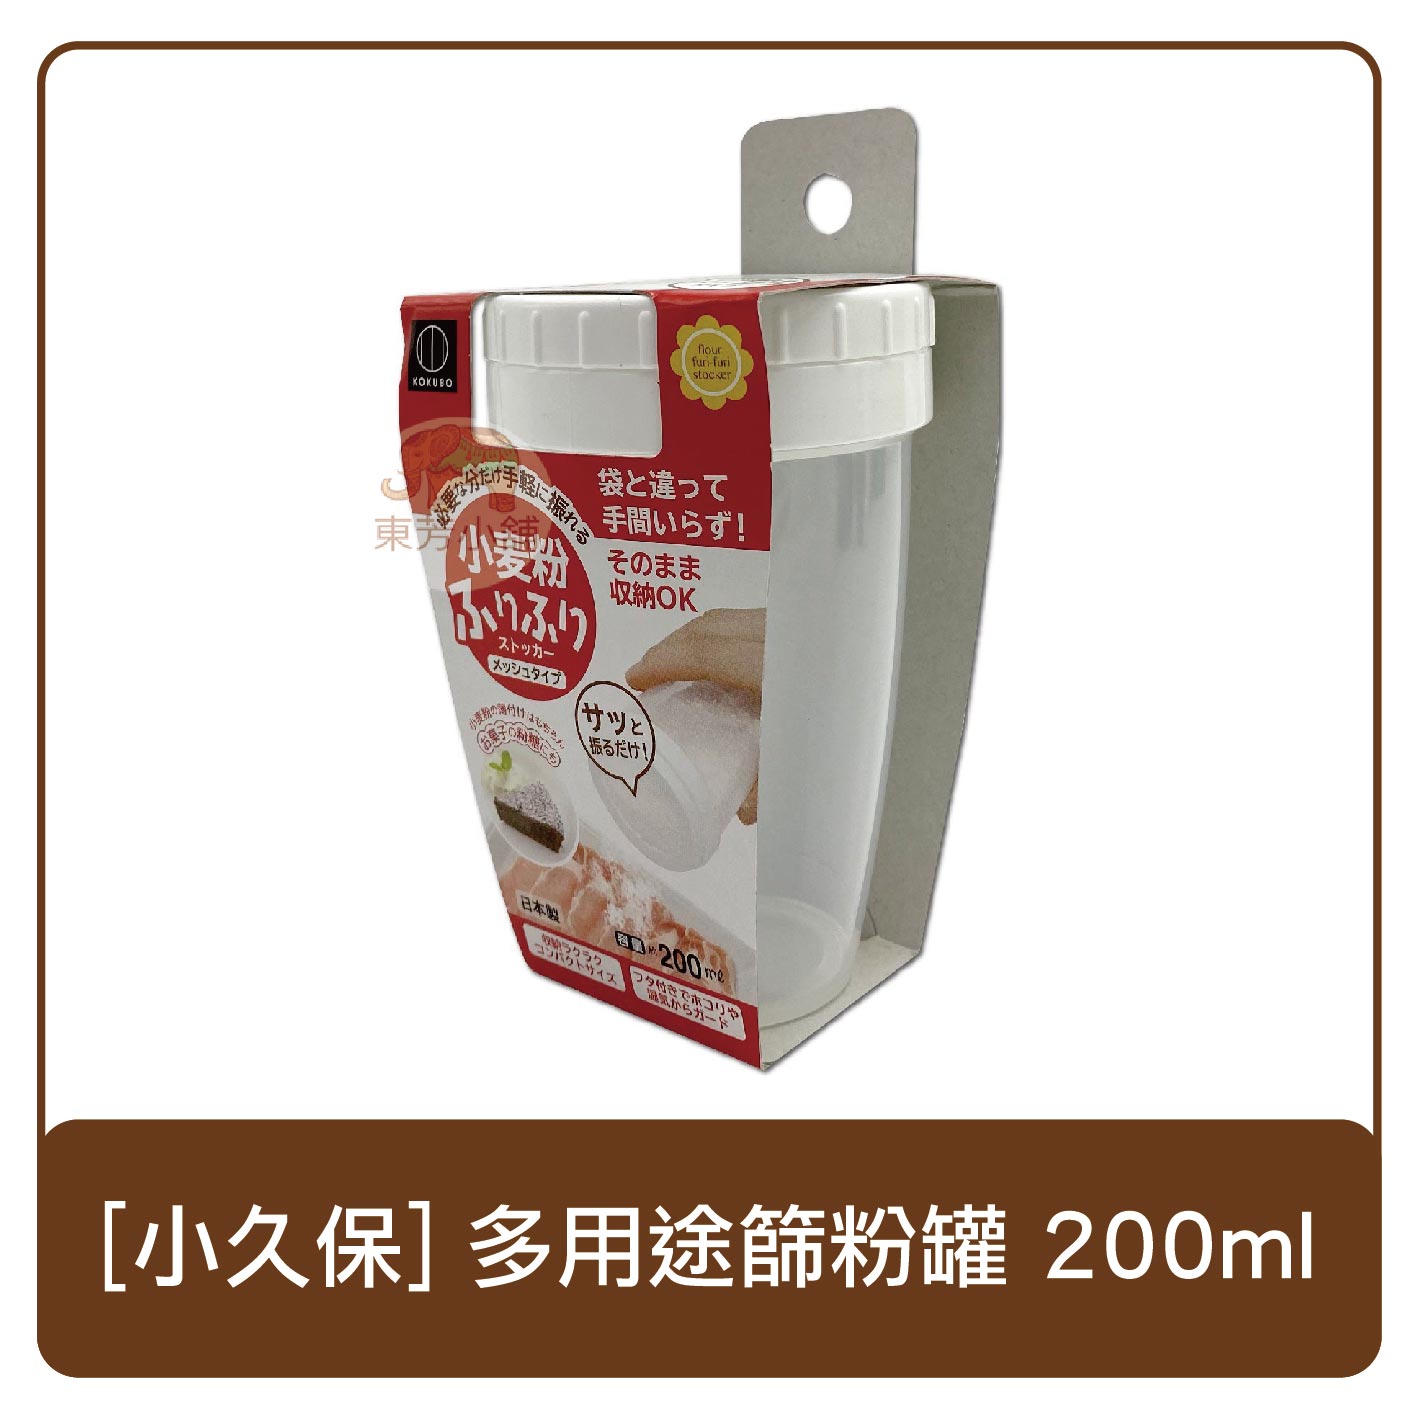 日本 小久保 多用途篩粉罐 200ml 過篩粉 調味粉罐